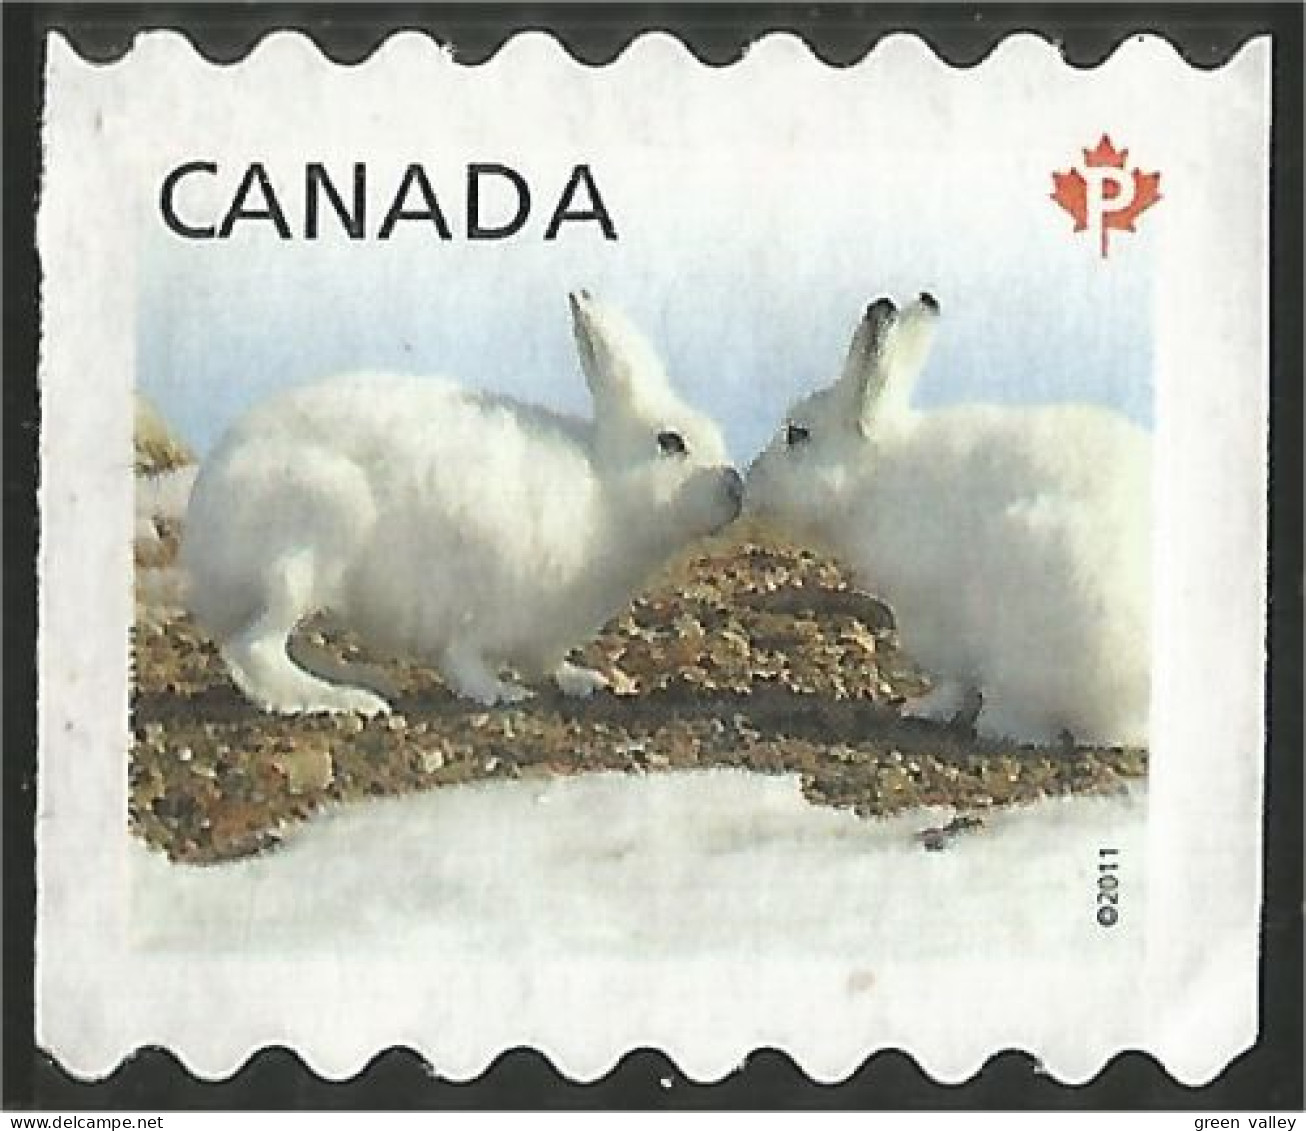 Canada Lapin Rabbit Hare Hase Conejo Coniglio Kaninchen Mint No Gum (25) - Rabbits